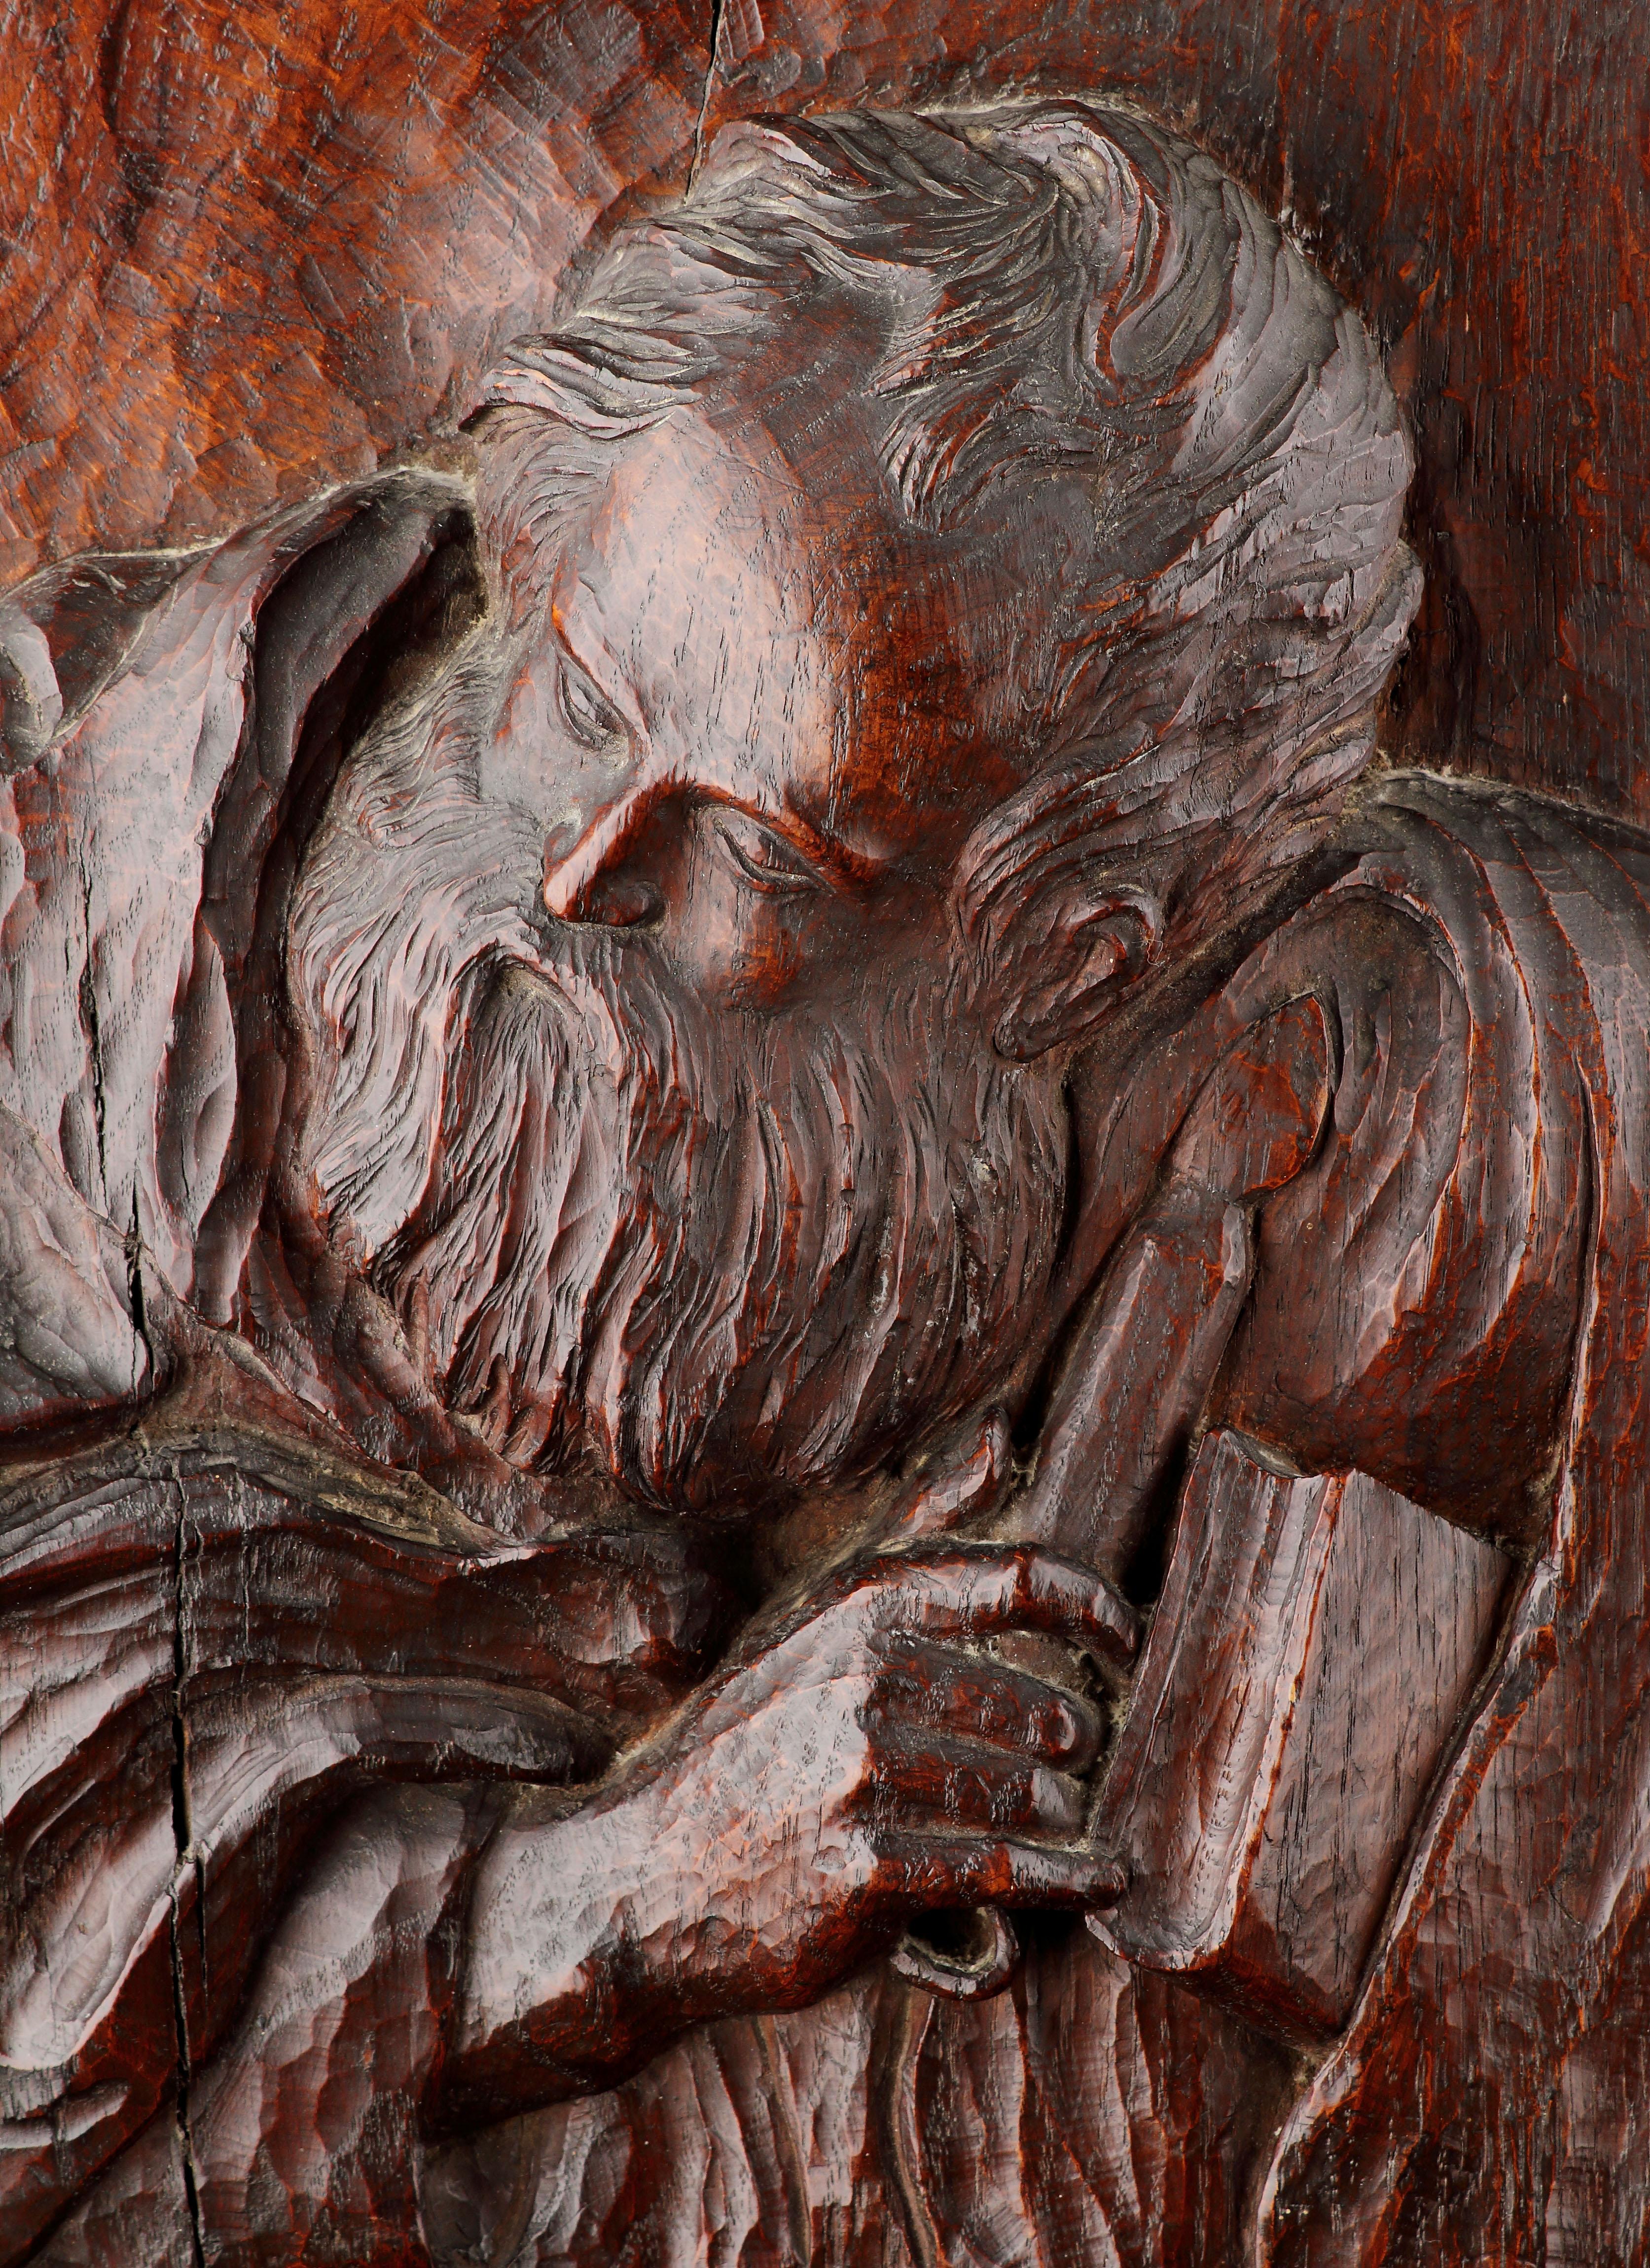 Haut-relief finement sculpté de Saint Jean 
Représentée en train de tenir une bougie et un livre.
Superbe couleur et patine 
Chêne
Angleterre 
17ème siècle

Taille : 32,5 cm de haut, 30 cm de large, 11 cm de profondeur - 12¾ ins de haut, 11¾ ins de